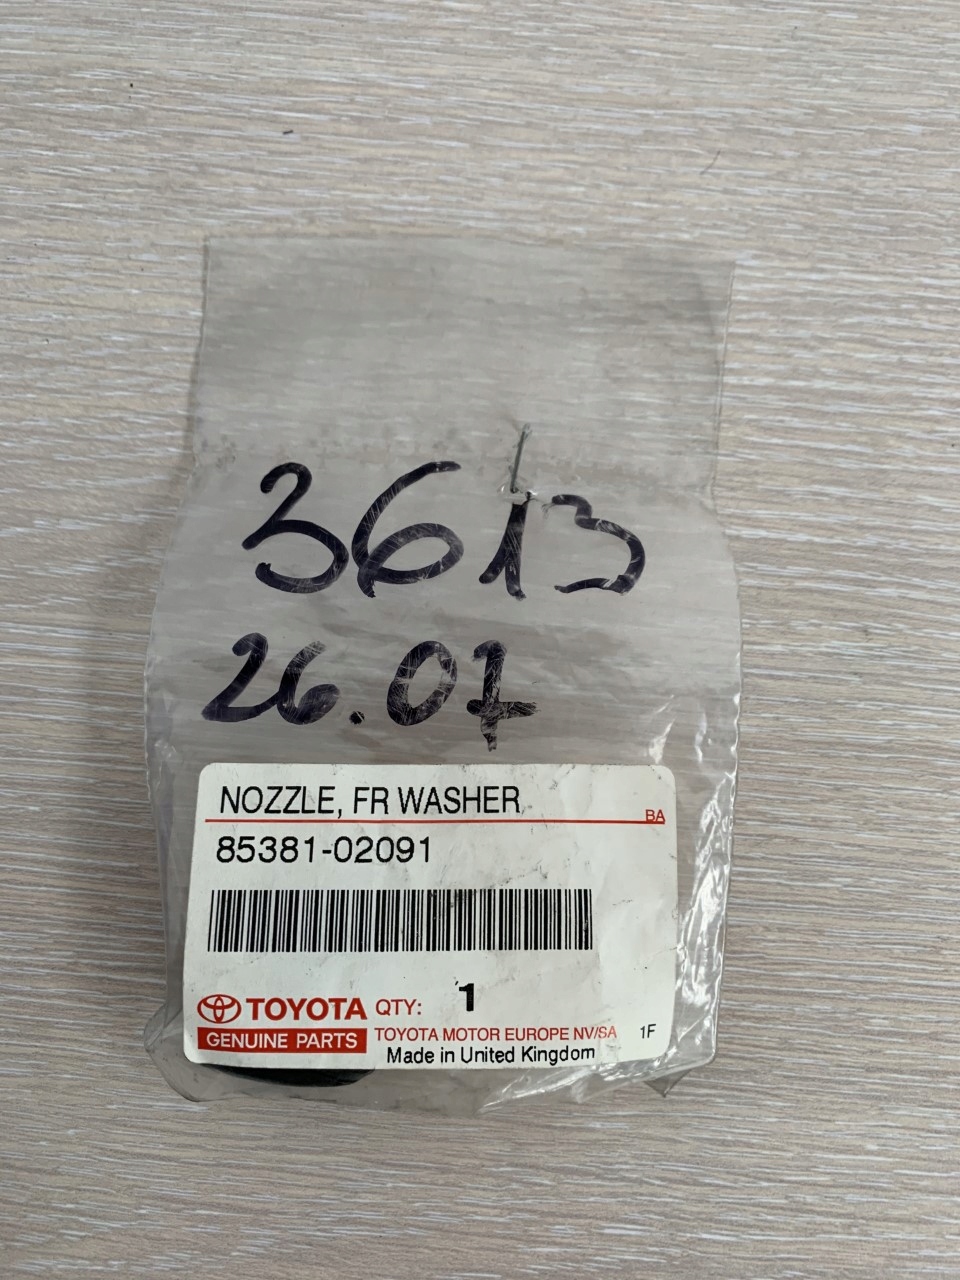 Dysza Spryskiwacza Toyota Corolla 85381-02091 Za 100 Zł Z Toruń - Allegro.pl - (9246945432)